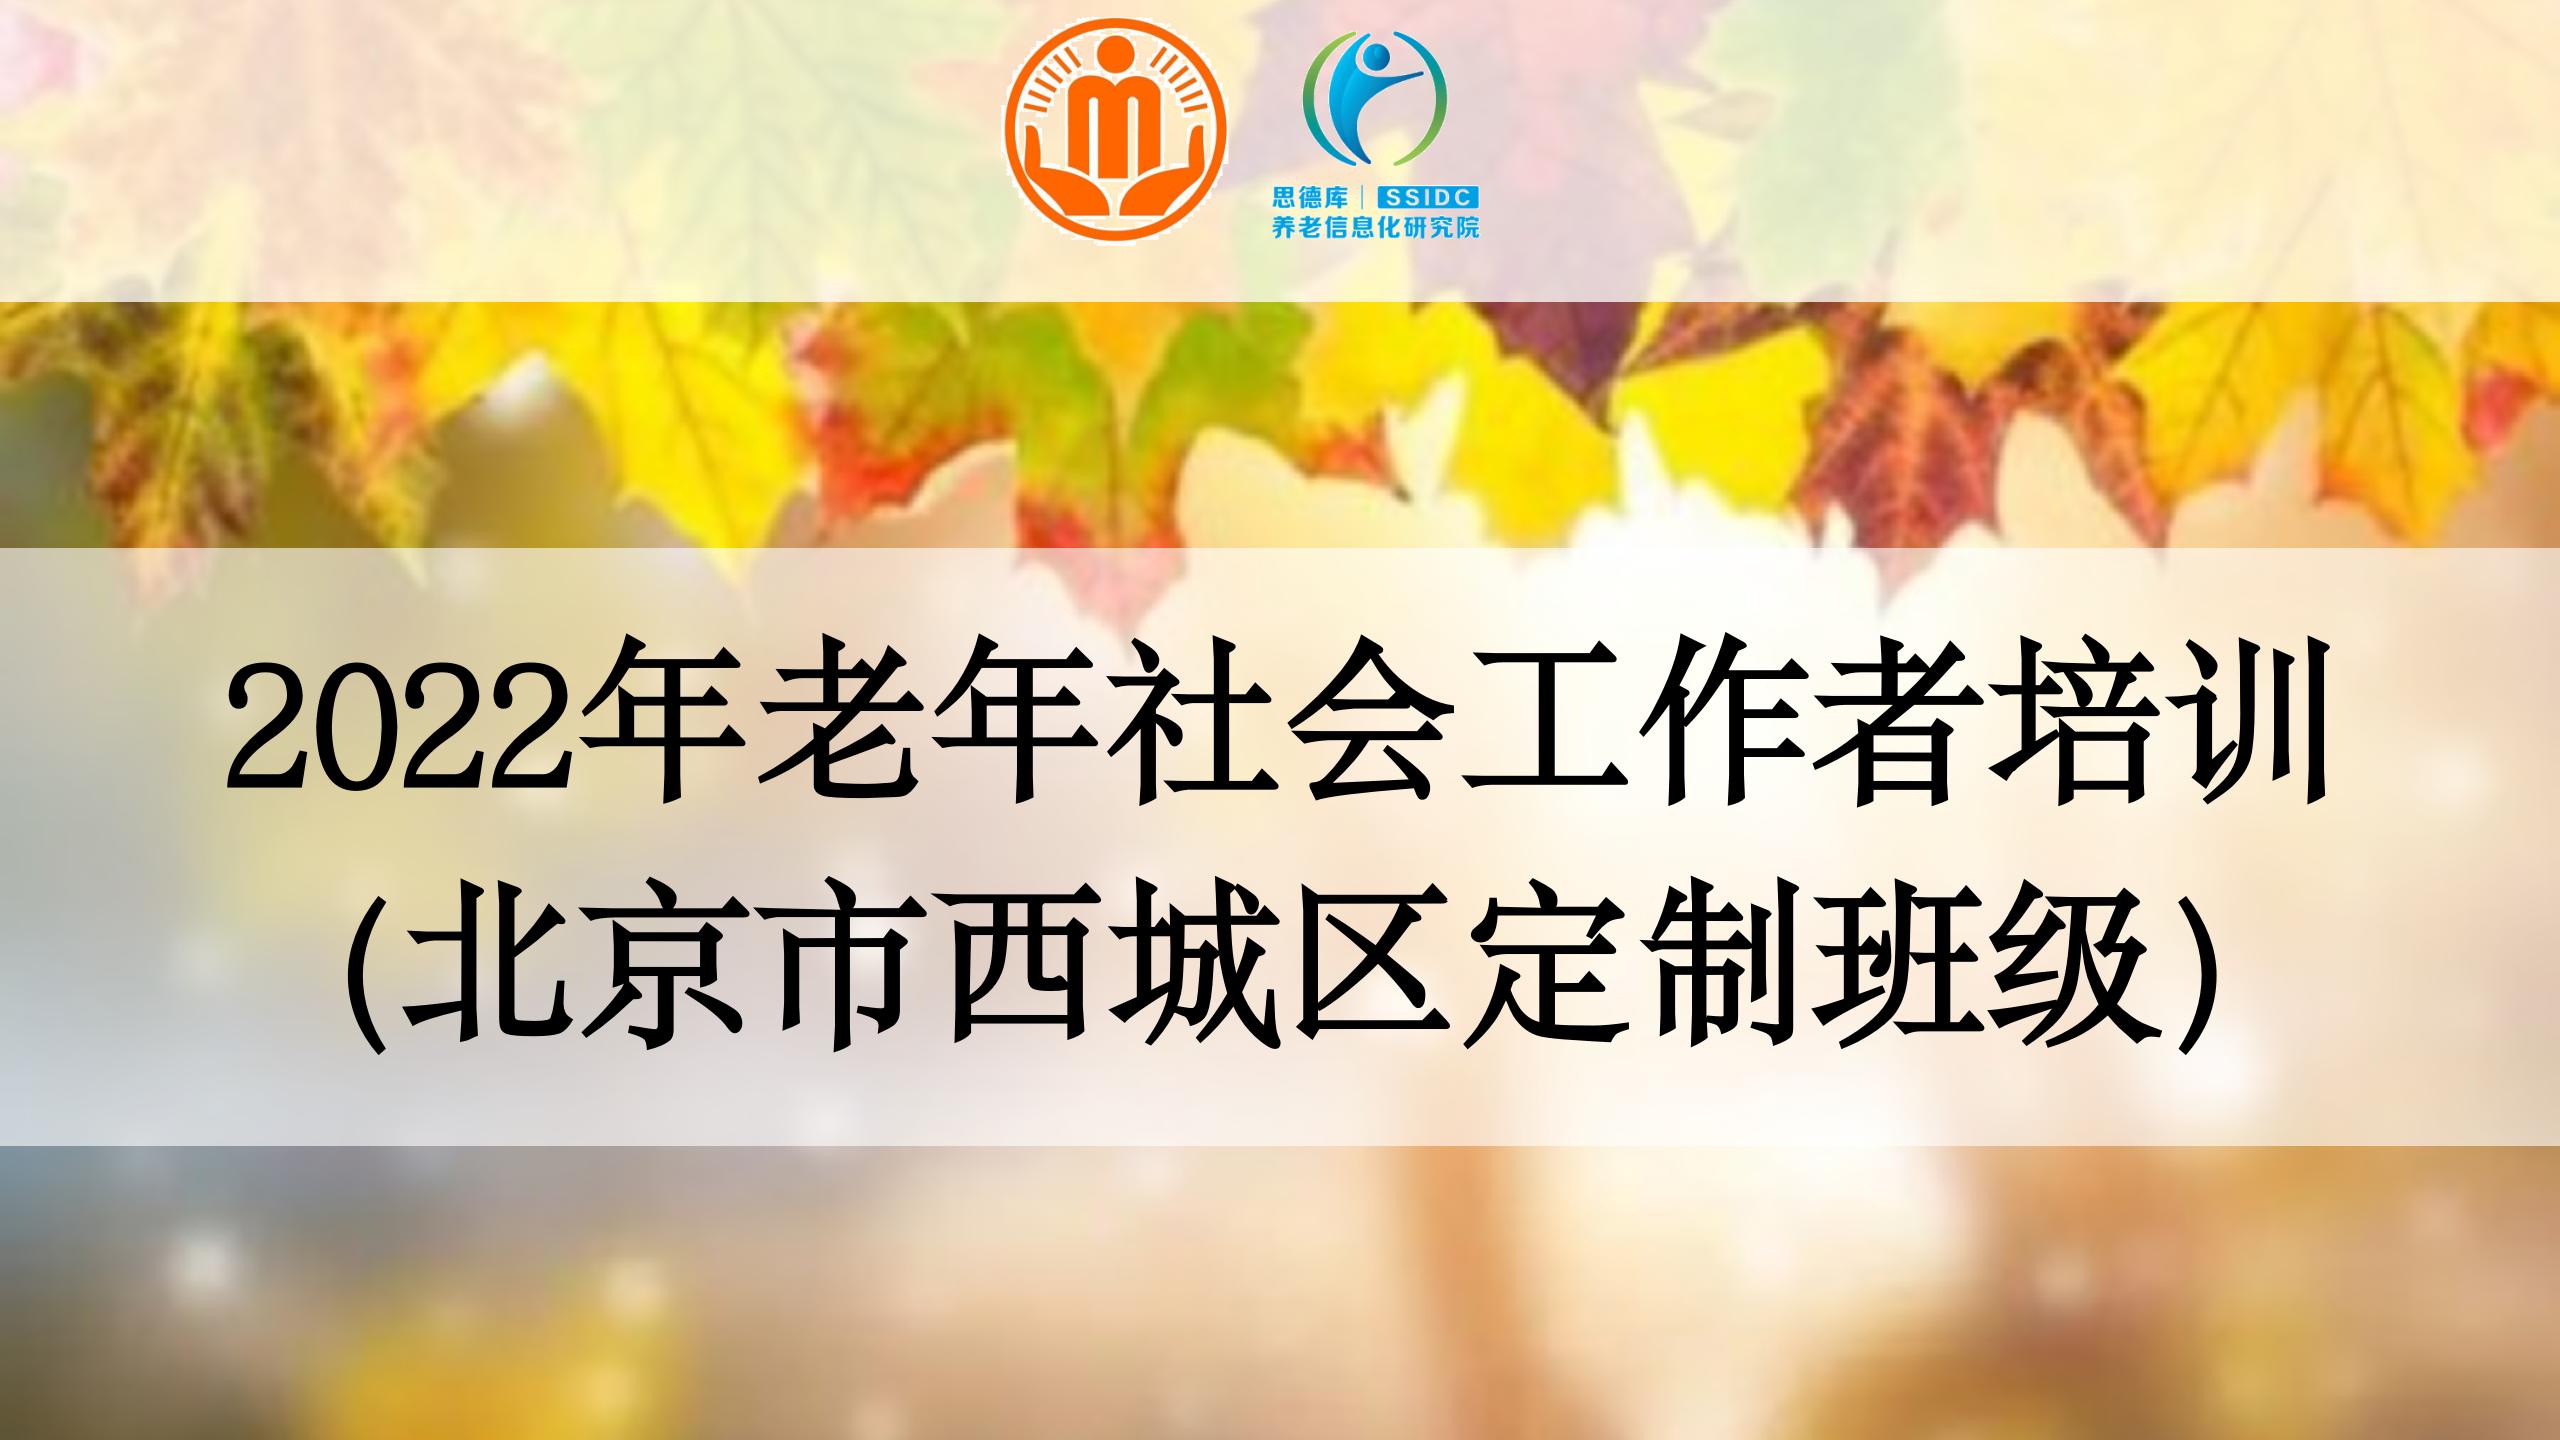 2022年北京西城区老年社会工作者培训